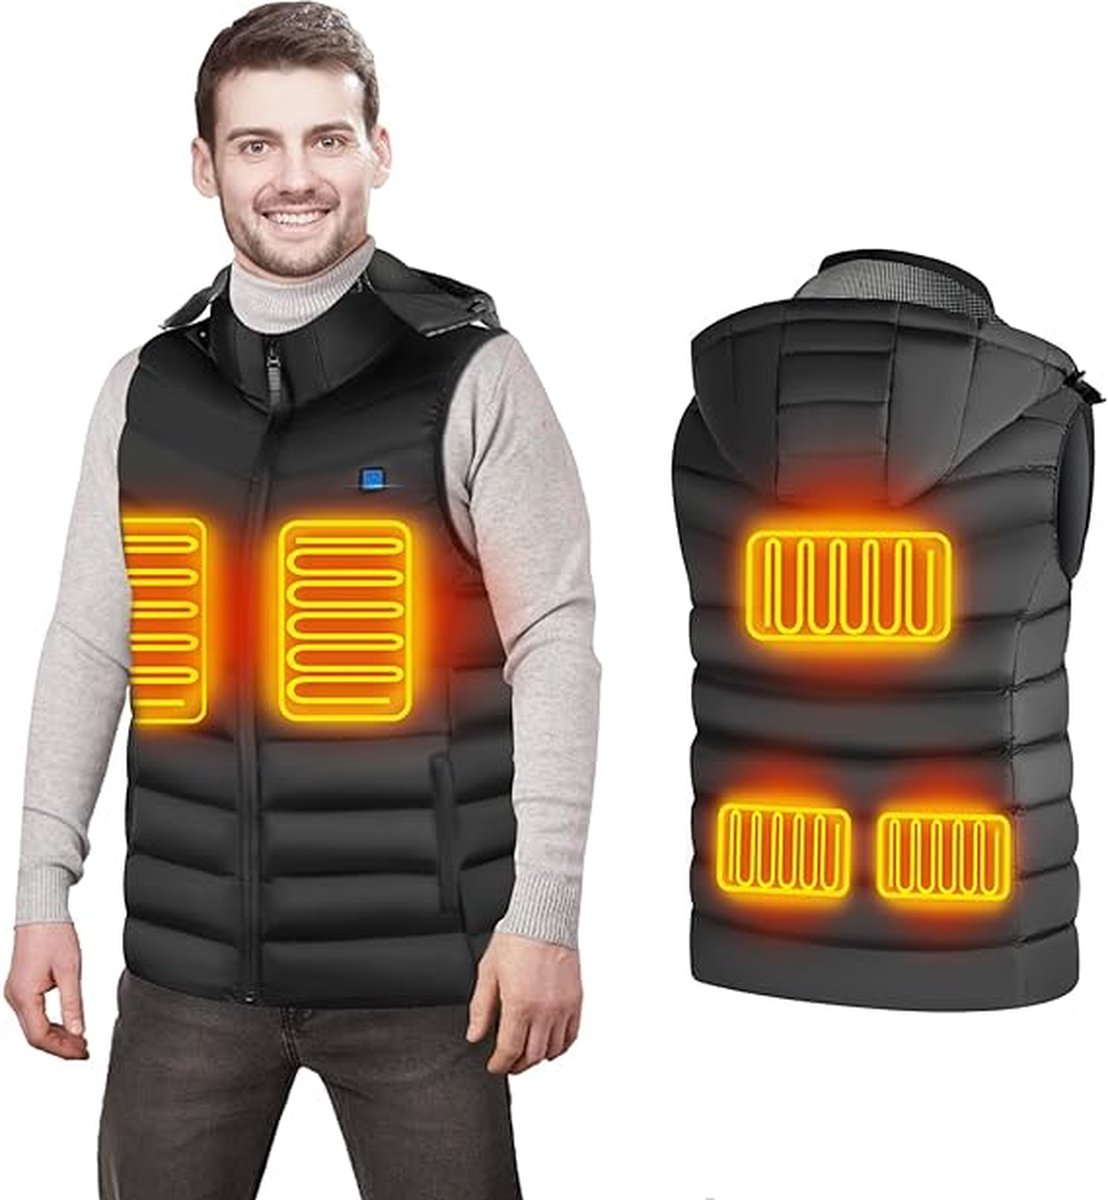 USB verwarmd vest - Voor dames en heren - Maat L - Bodywarmer met 3 warmte niveaus - 5 verwarming zones - Afneembare capuchon - Verstelbare temperatuur - Zwart